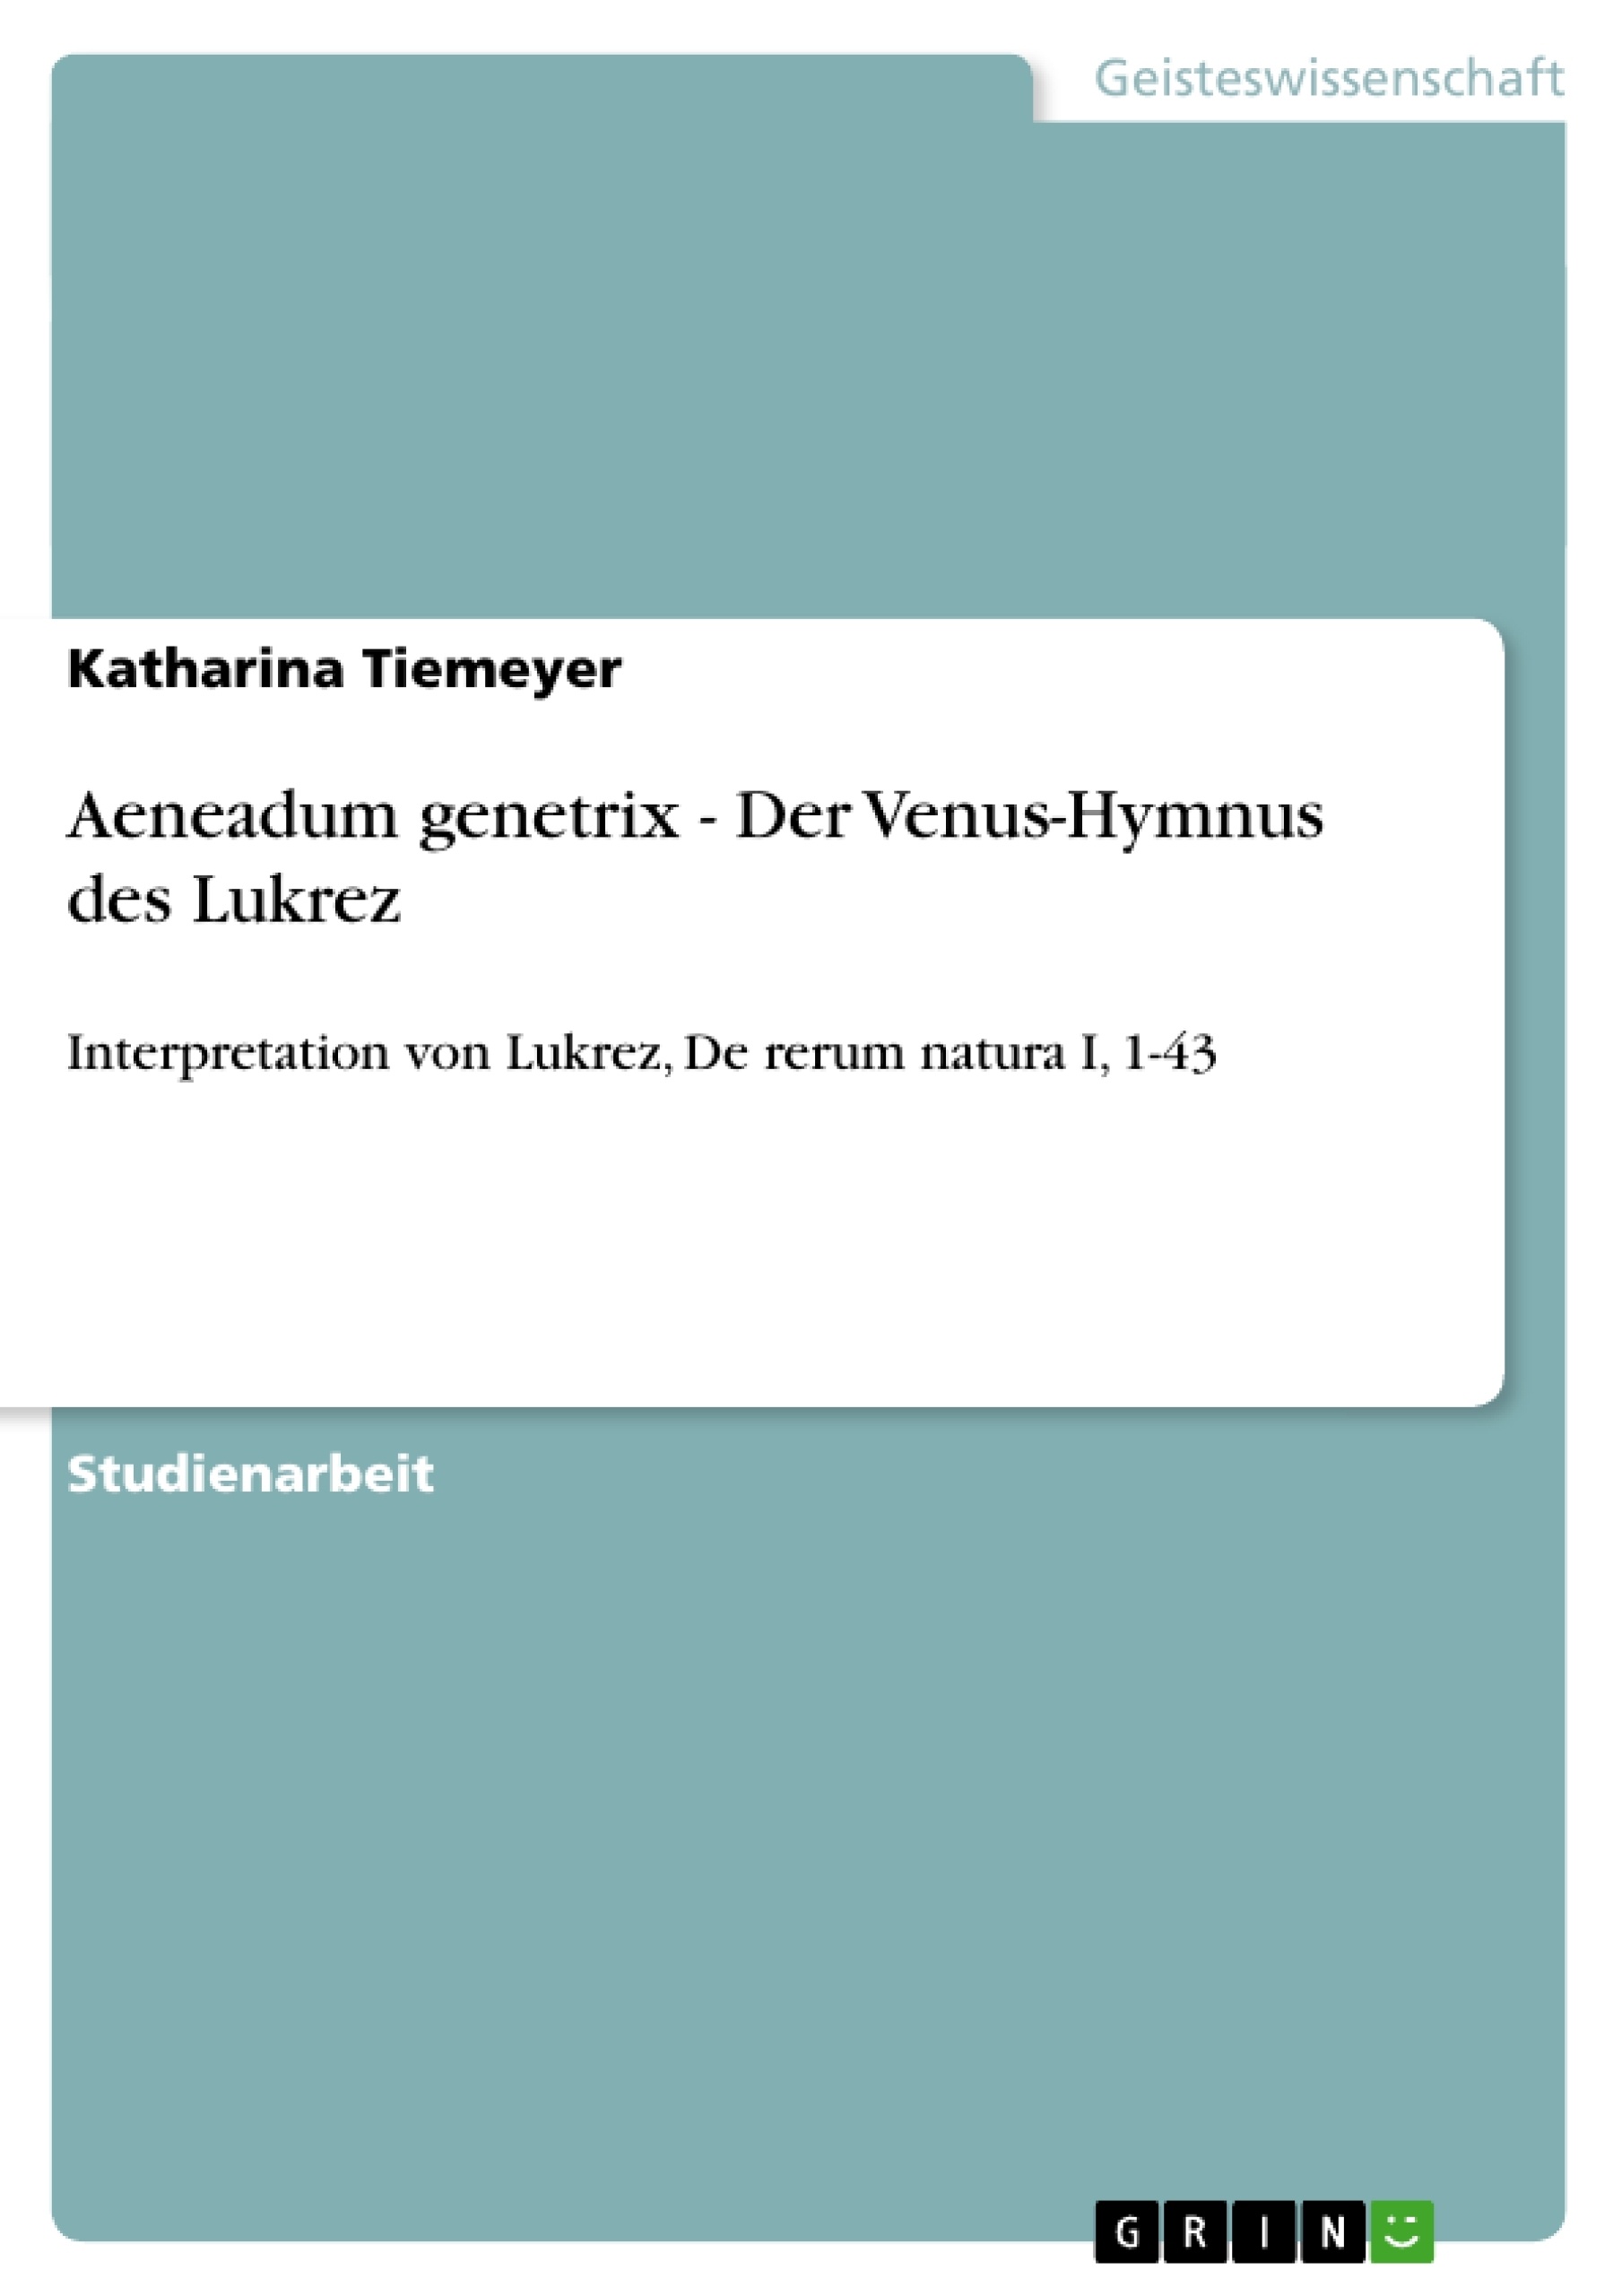 Título: Aeneadum genetrix - Der Venus-Hymnus des Lukrez